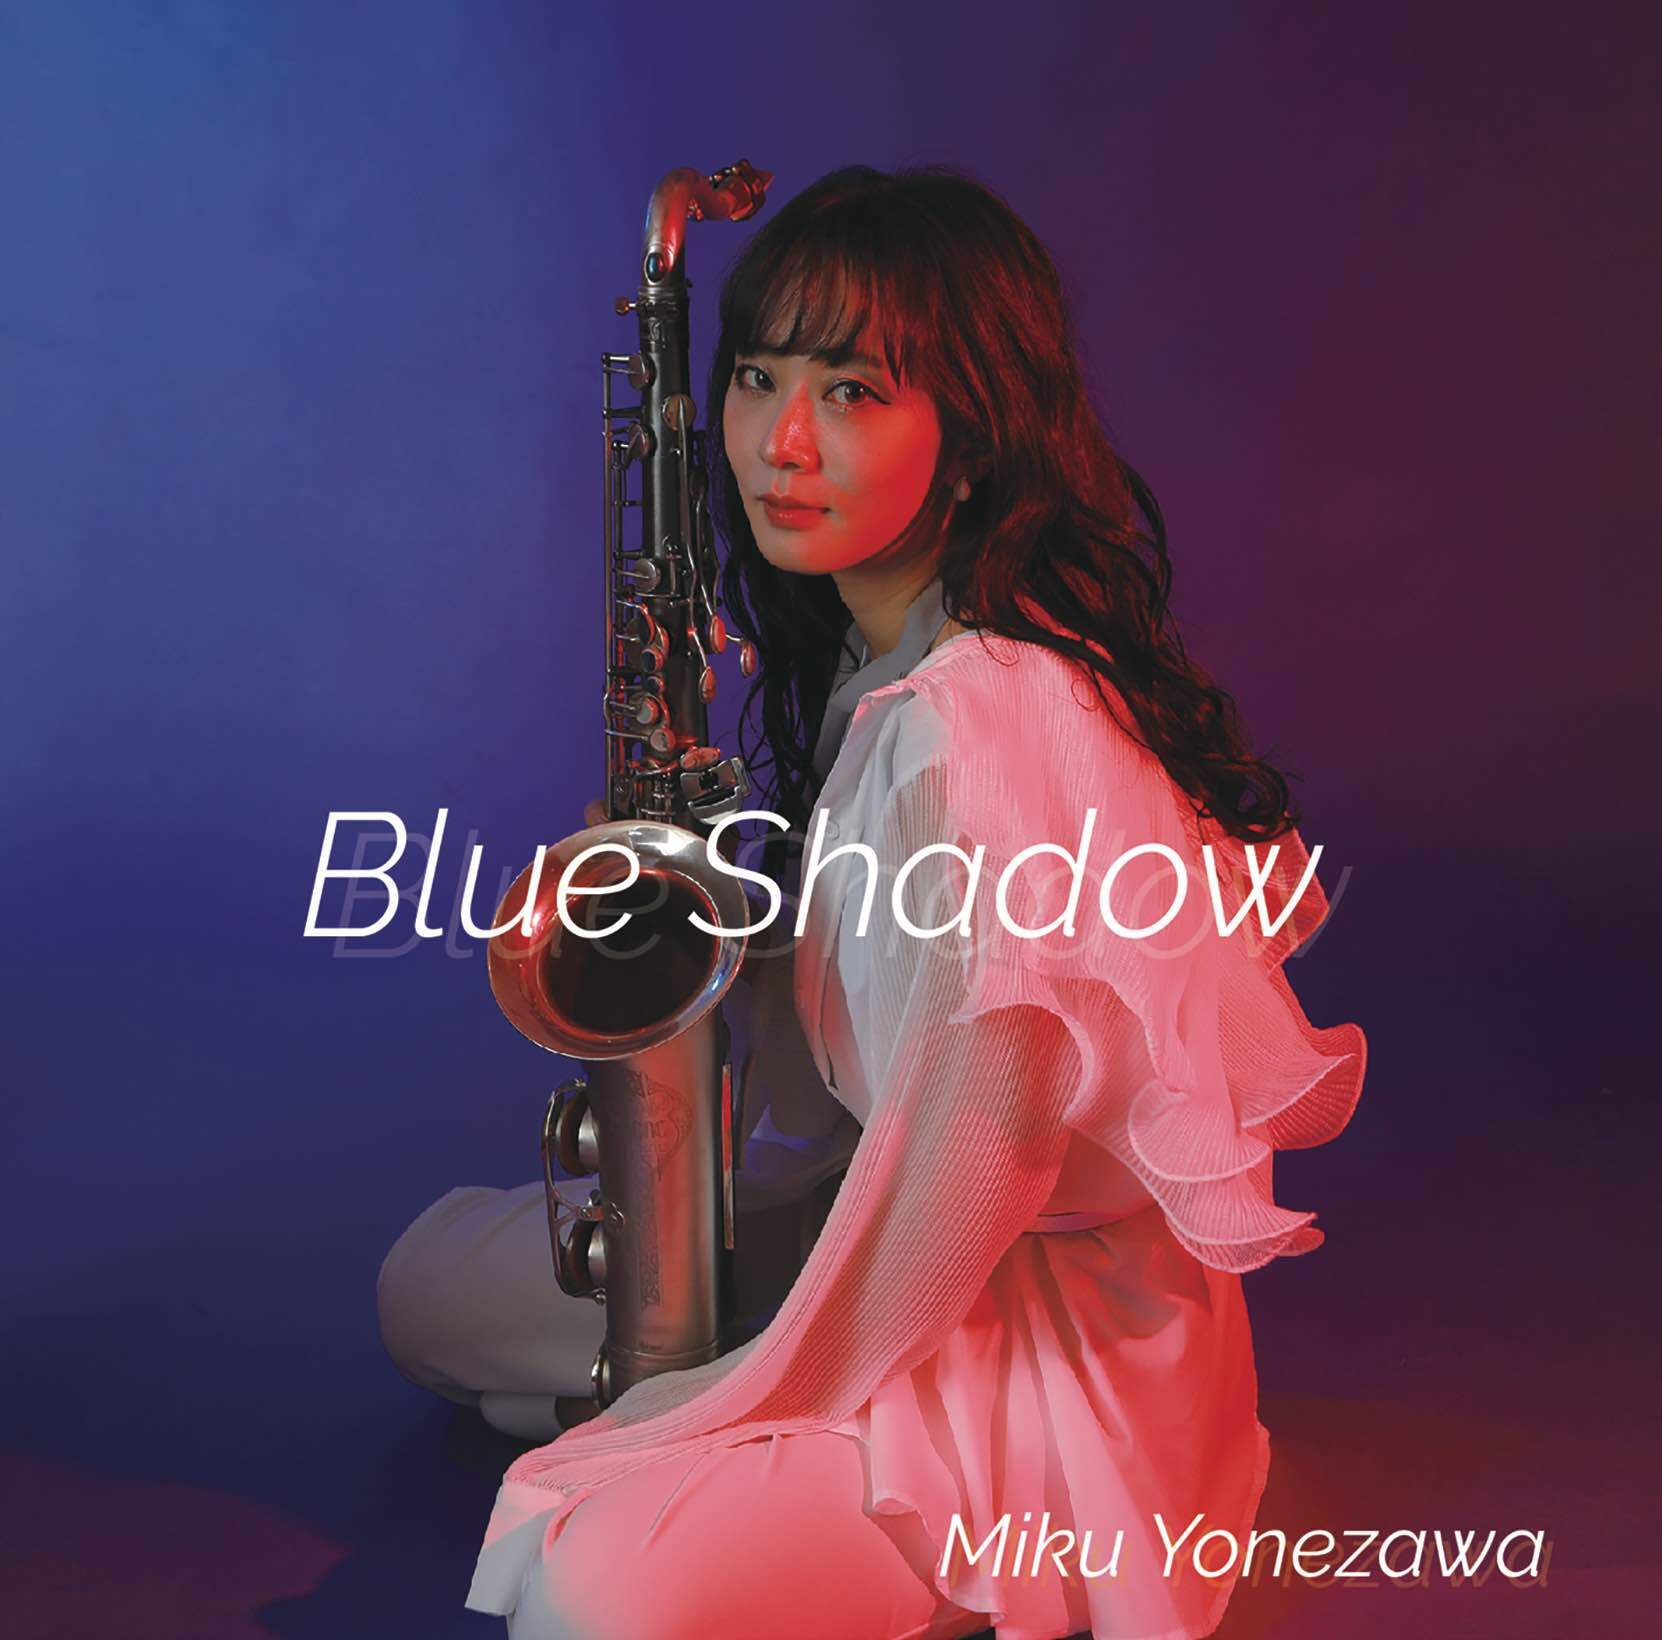 ジャズバラードアルバム第2弾「Blue Shadow」